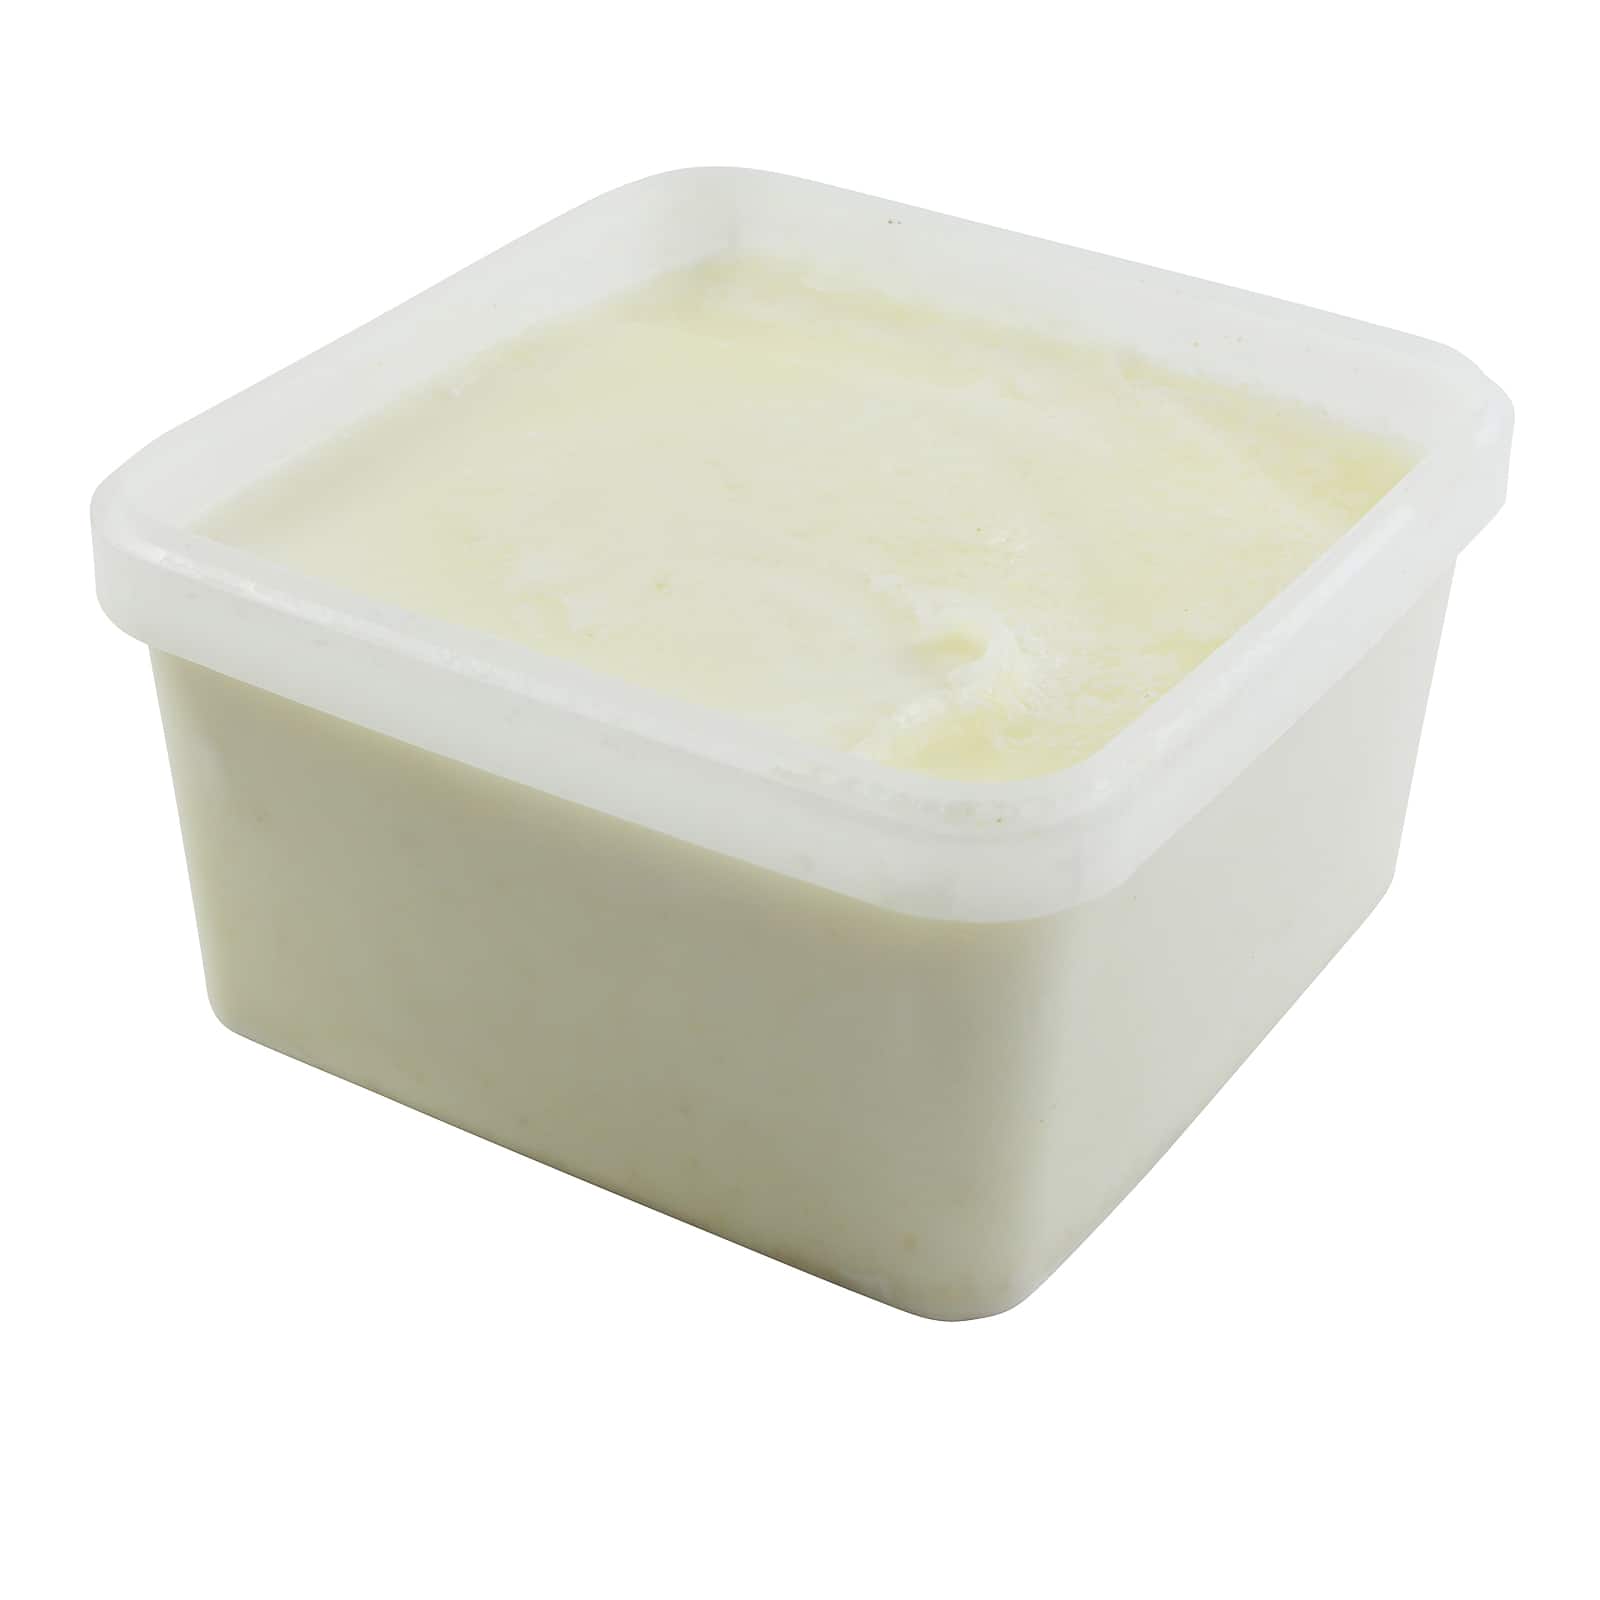 Triple Butter Soap Base, 5lb. by Make Market&#xAE;